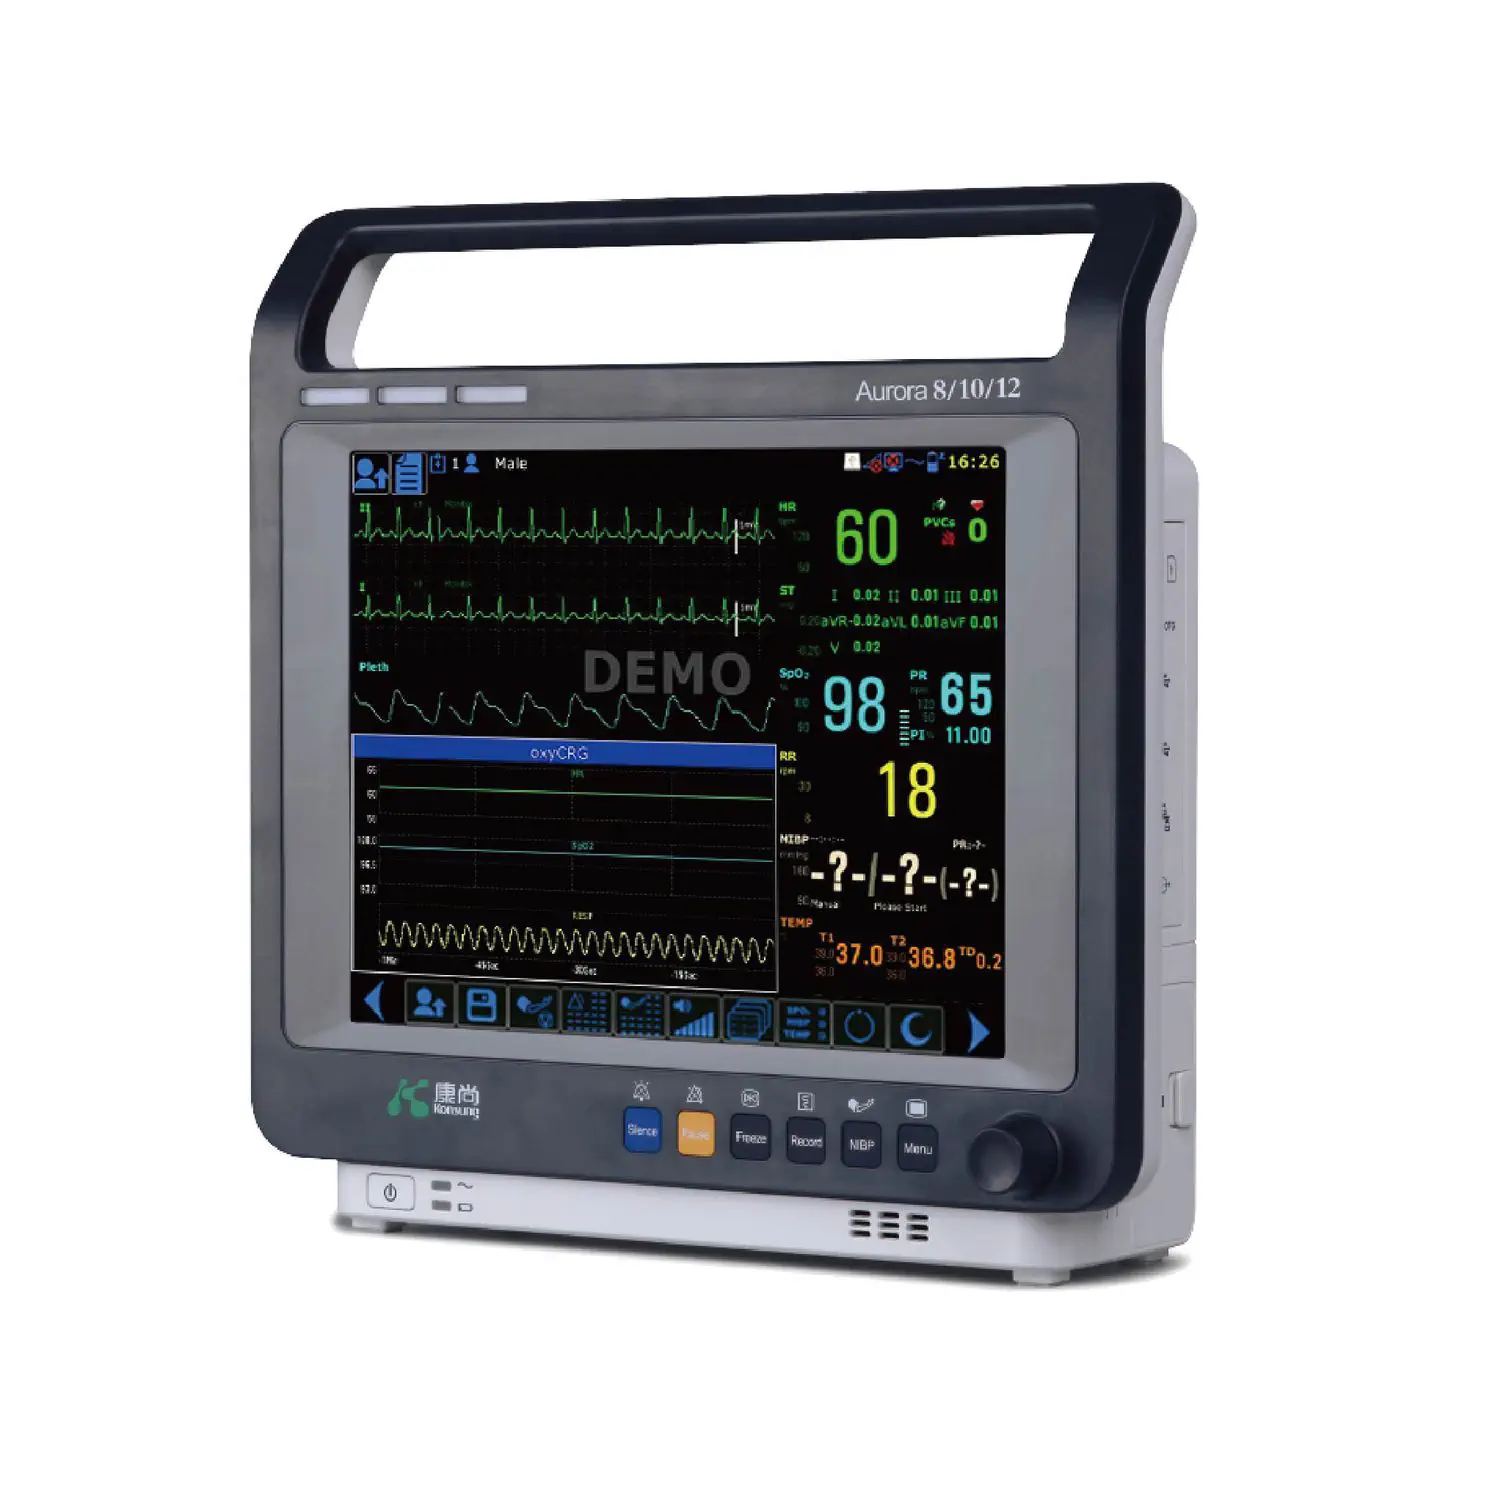 เครื่องติดตามการทำงานของหัวใจและสัญญาณชีพ  Portable patient monitor Aurora 12  Konsung